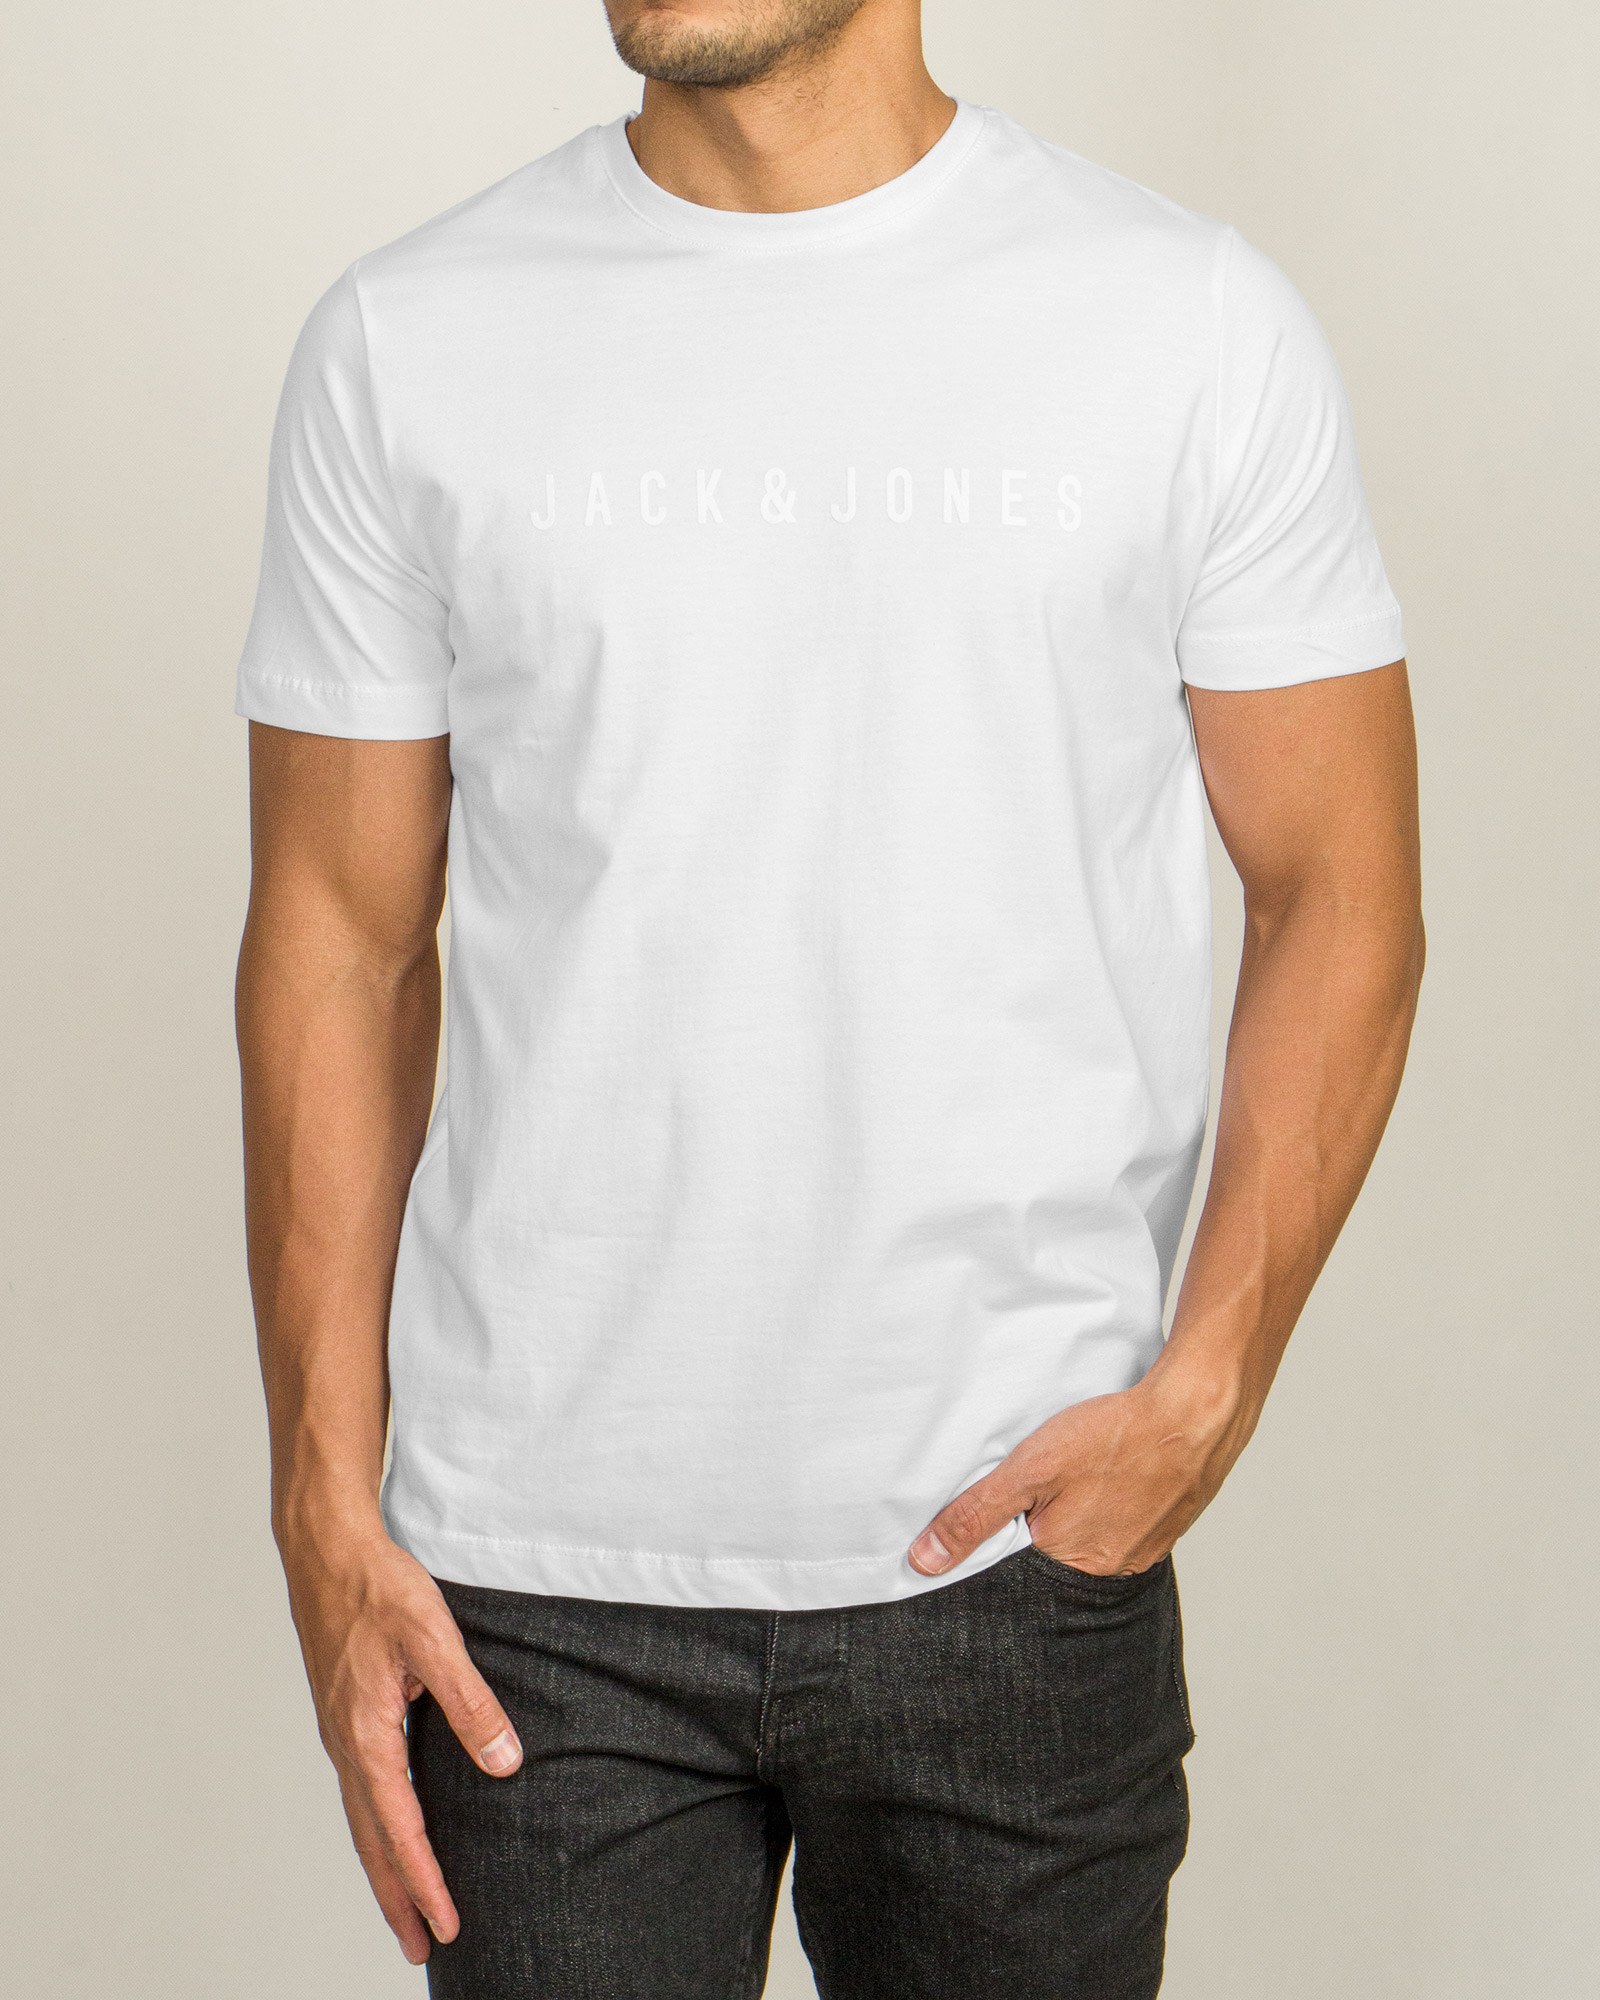 خرید اینترنتی تیشرت آستین کوتاه مردانه چاپدار سفید 20195105